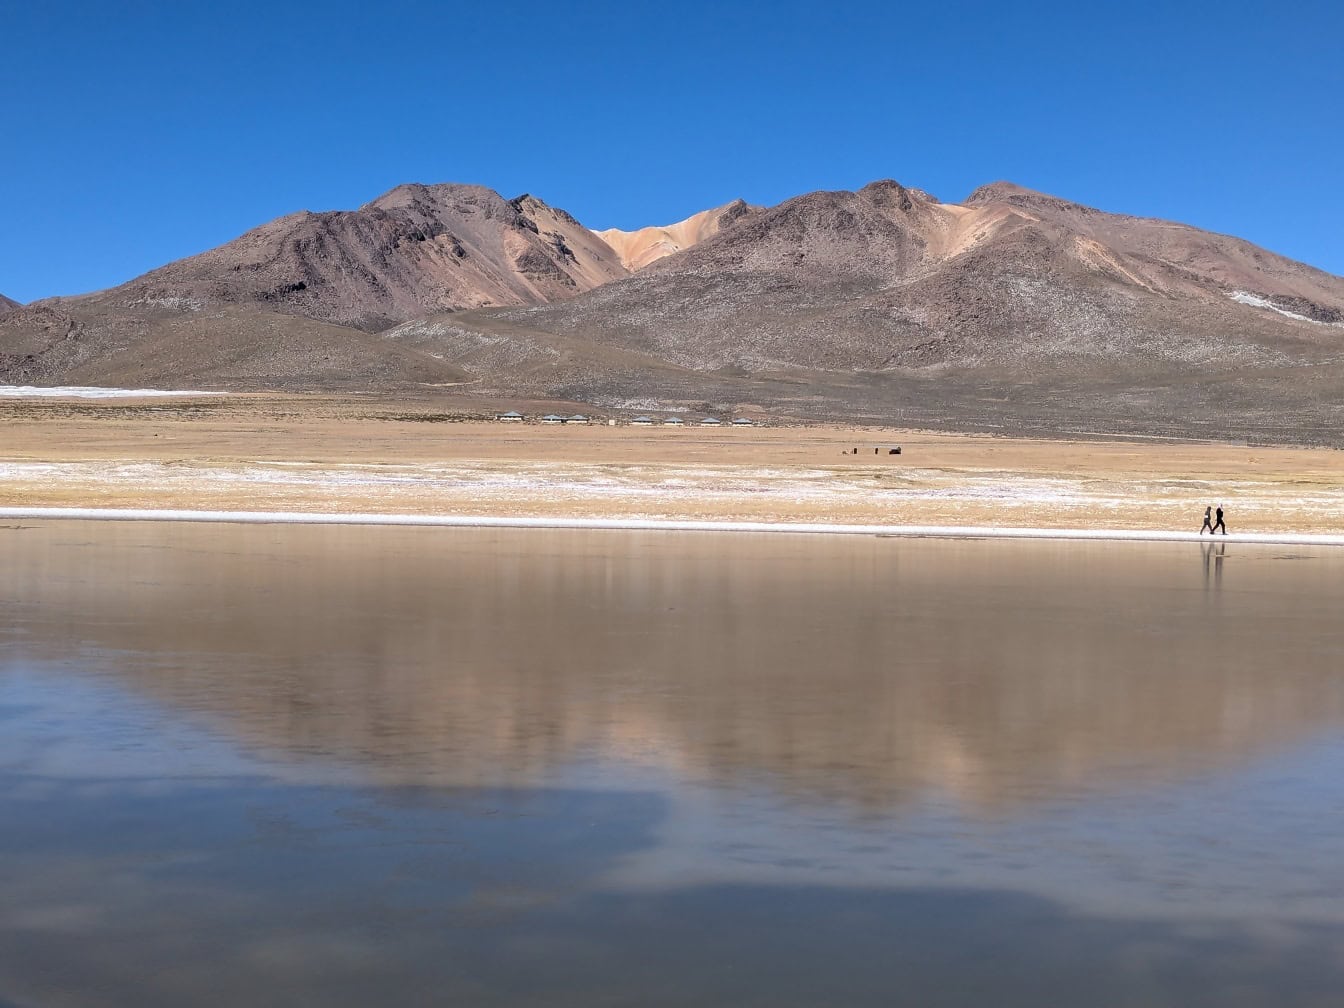 Πανόραμα της λίμνης Salinas, μιας αλμυρής λίμνης στην Arequipa στις Άνδεις του Περού με βουνά στο βάθος